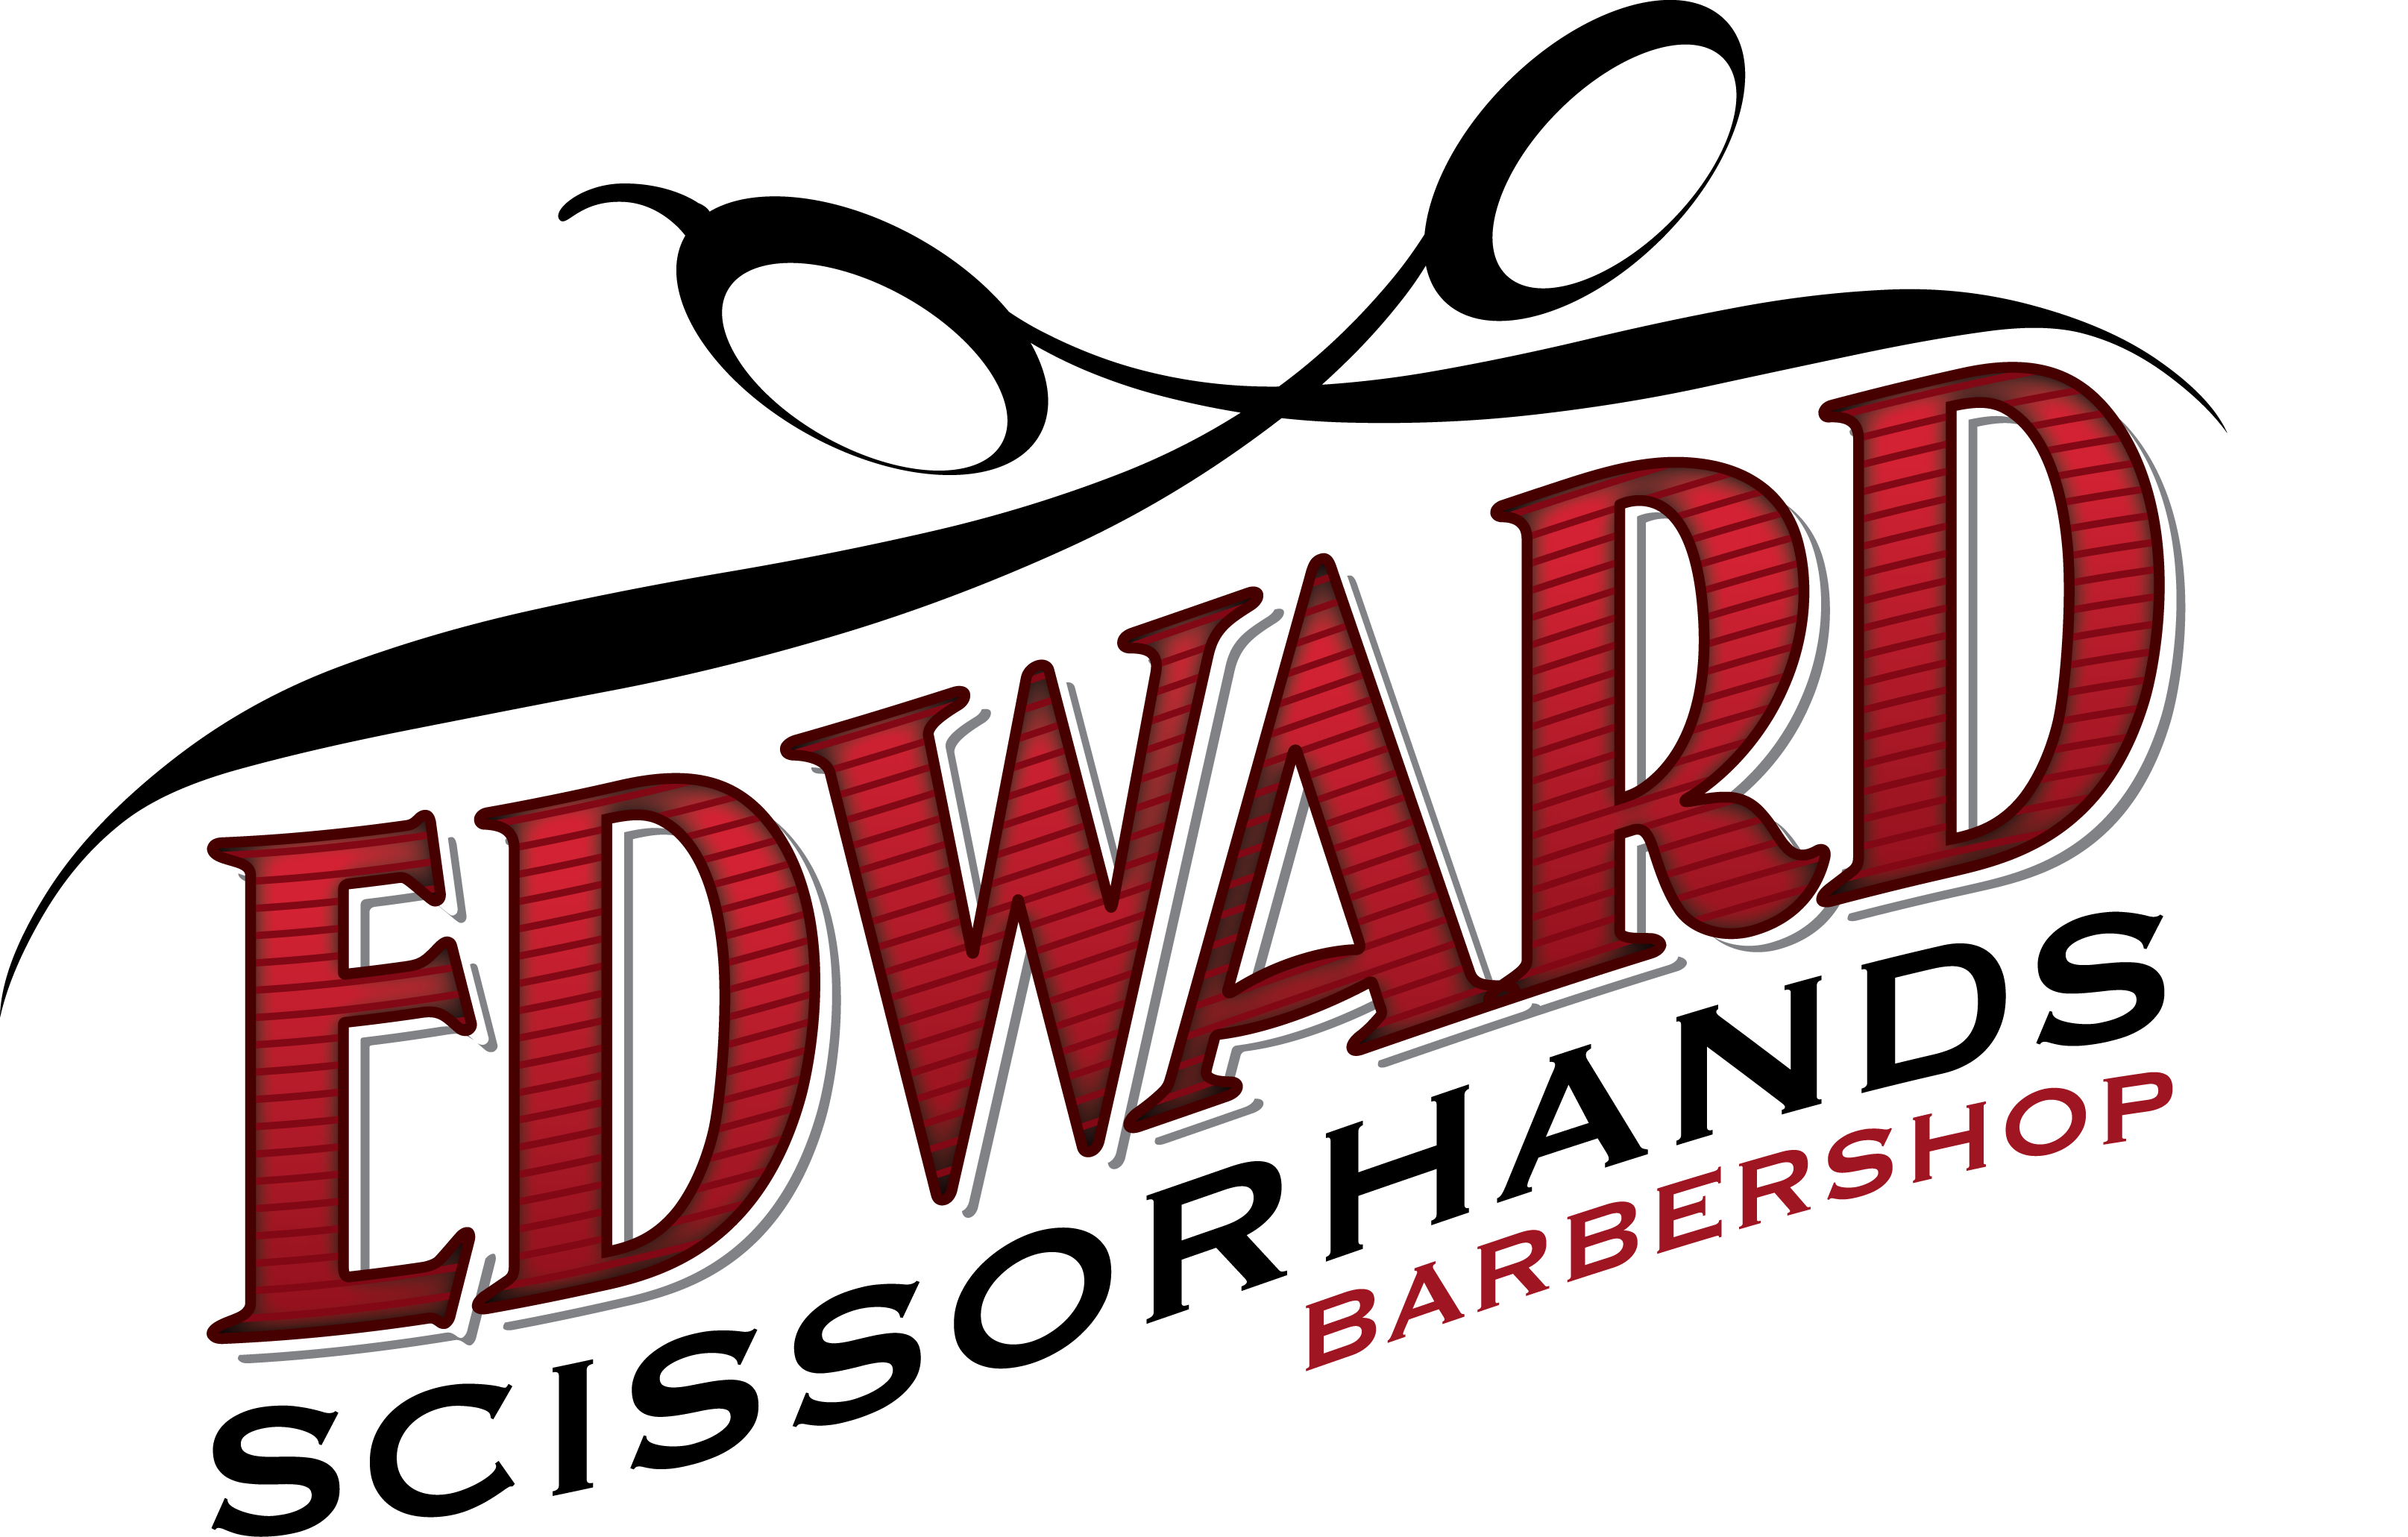 Edward Scissorhands Barber Shop